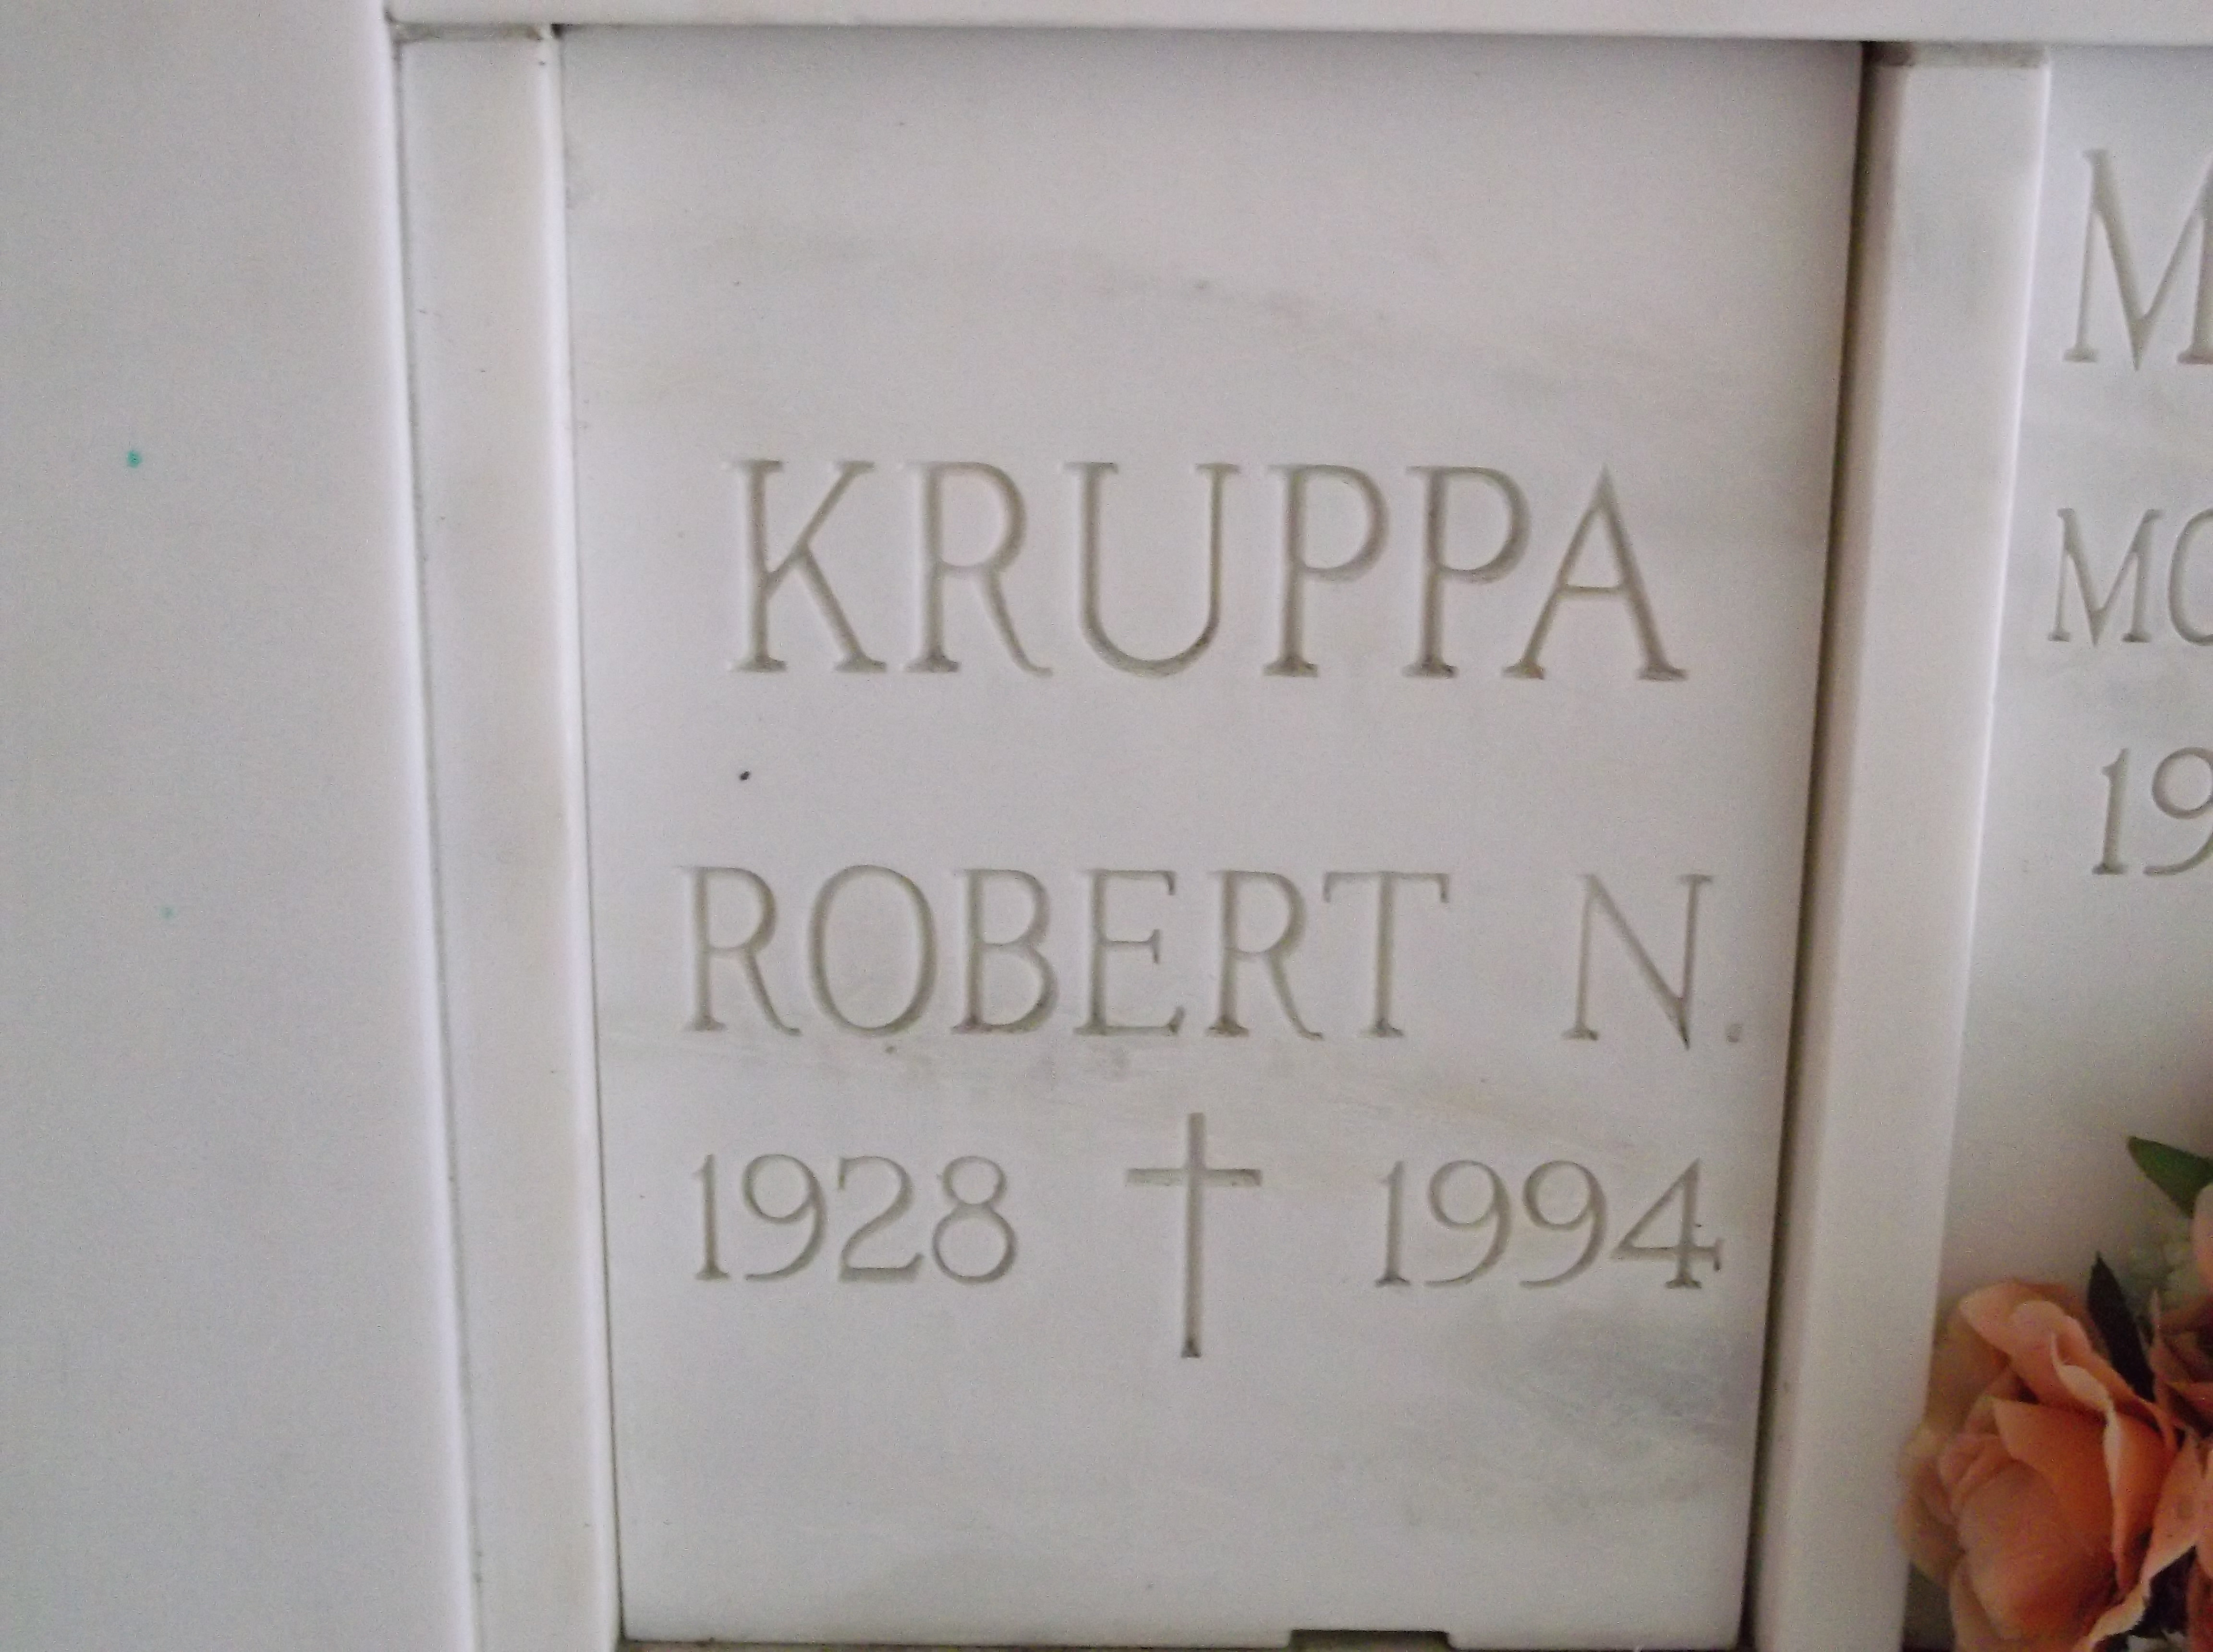 Robert N Kruppa